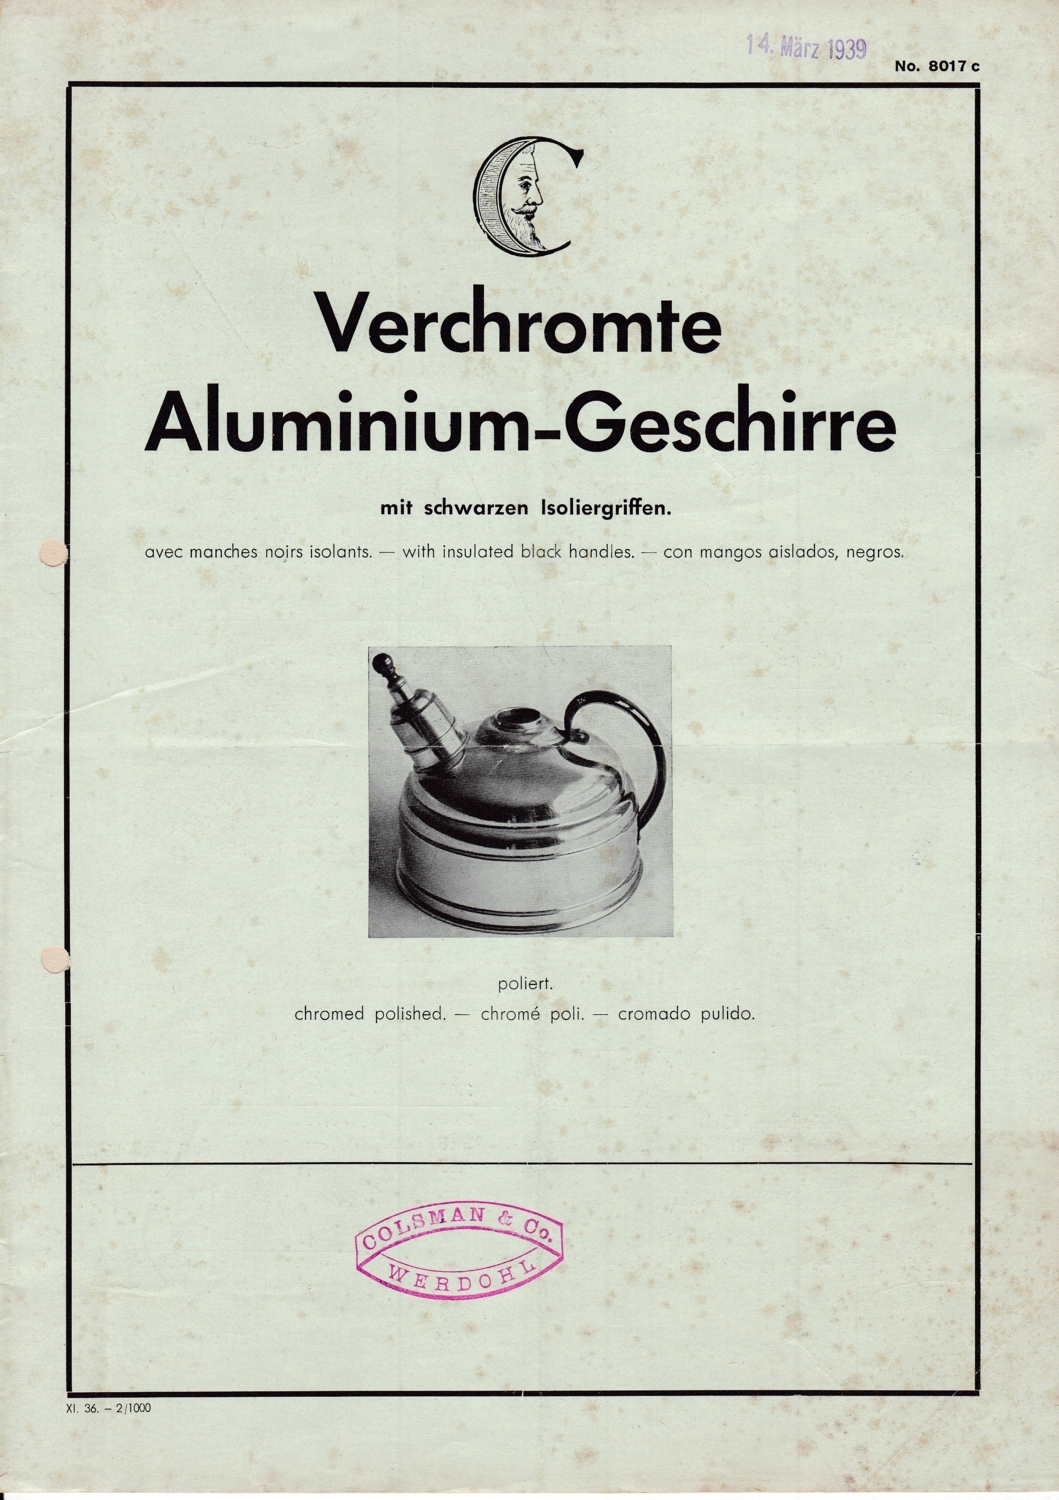 Preisliste und Katalog für Verchromte Aluminium-Geschirre der Firma Colsman & Co., Werdohl, 1939 (M.-A. Trappe CC BY-NC-SA)